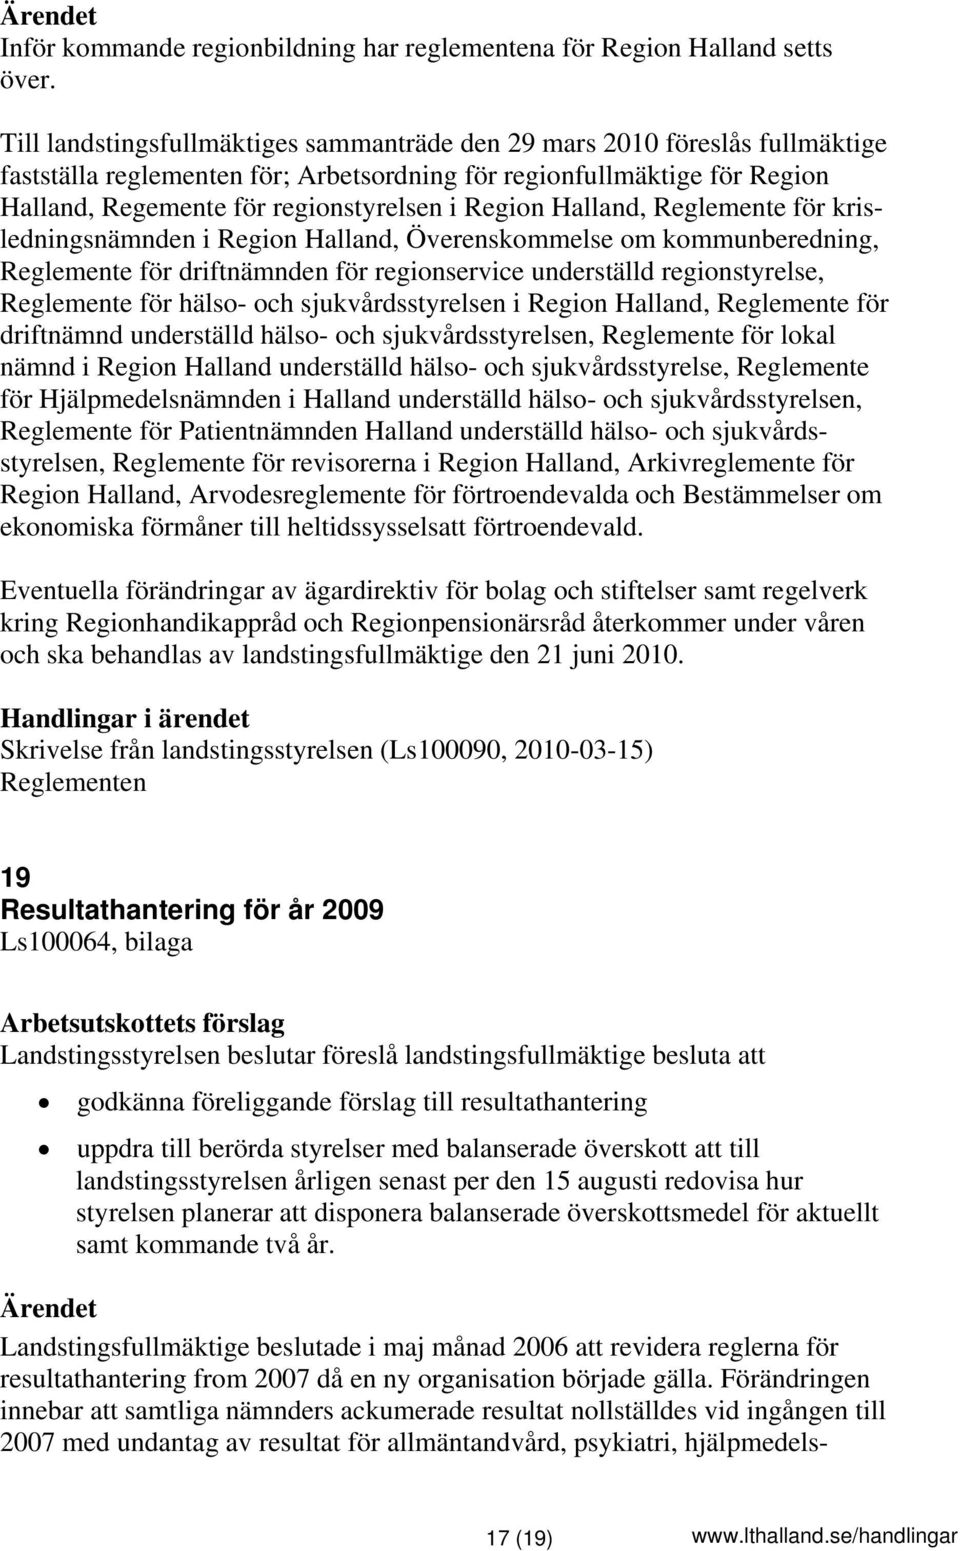 Region Halland, Reglemente för krisledningsnämnden i Region Halland, Överenskommelse om kommunberedning, Reglemente för driftnämnden för regionservice underställd regionstyrelse, Reglemente för